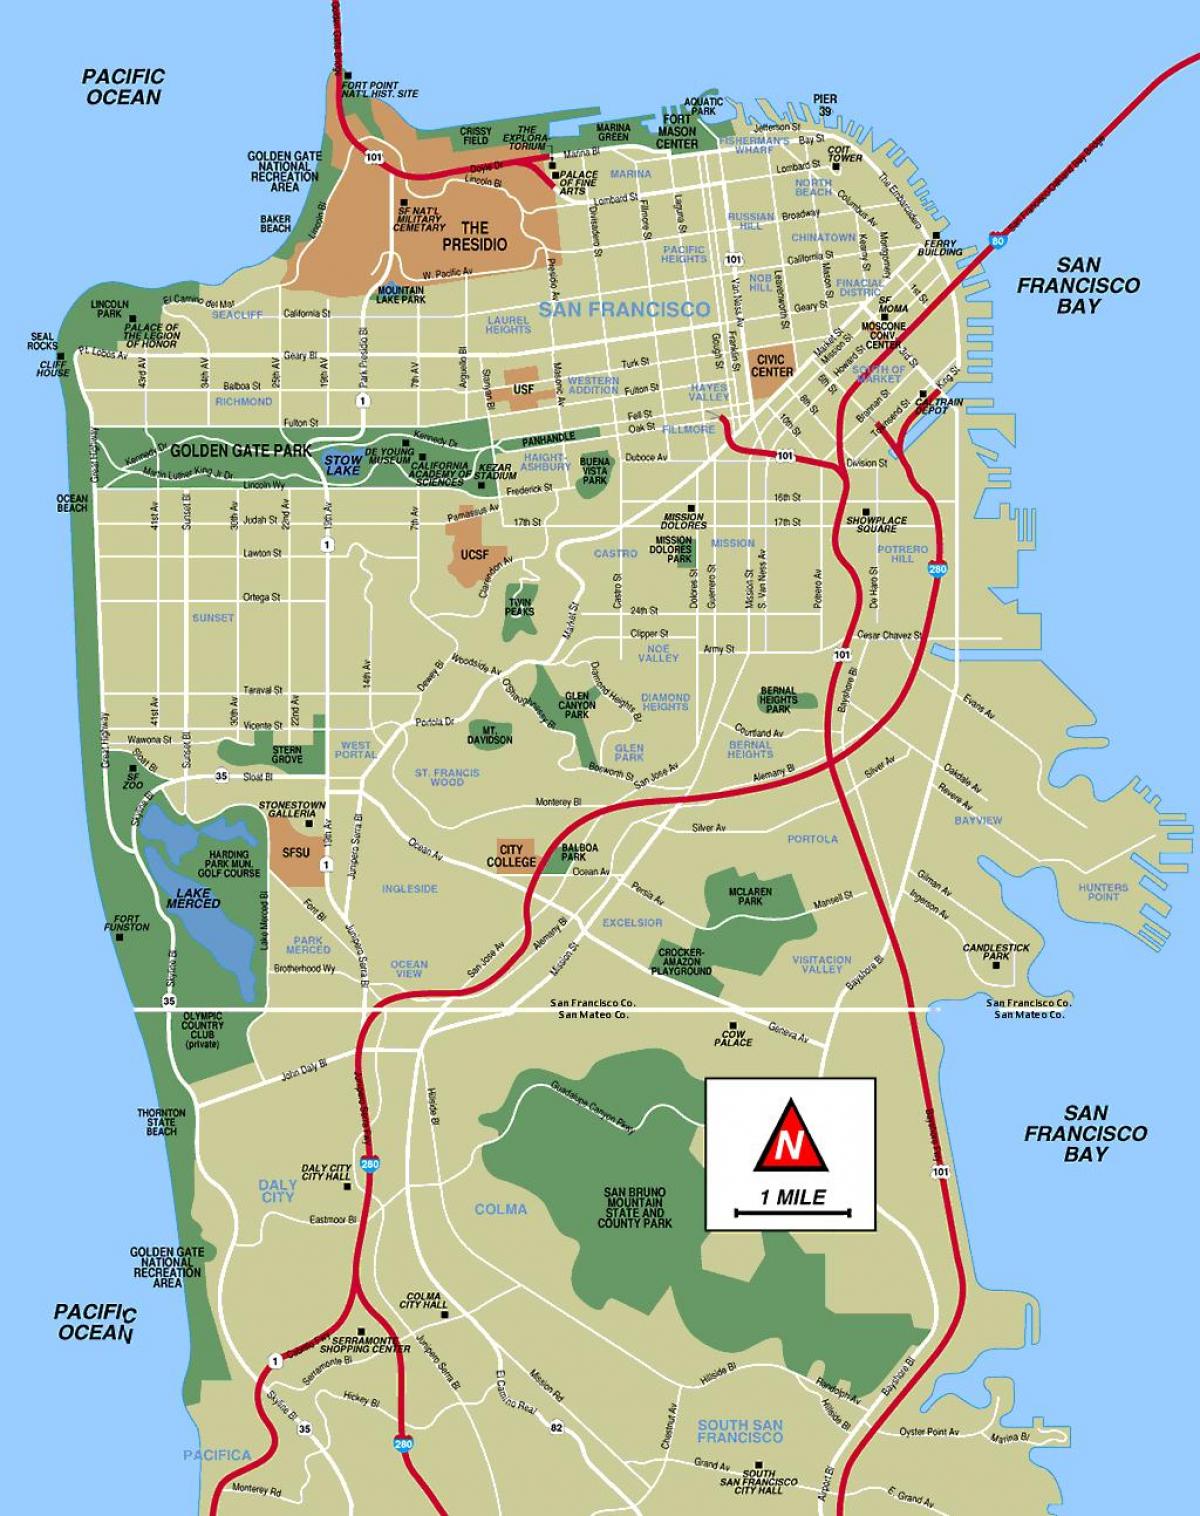 سان فرانسسکو کا دورہ کرنے کے مقامات کا نقشہ